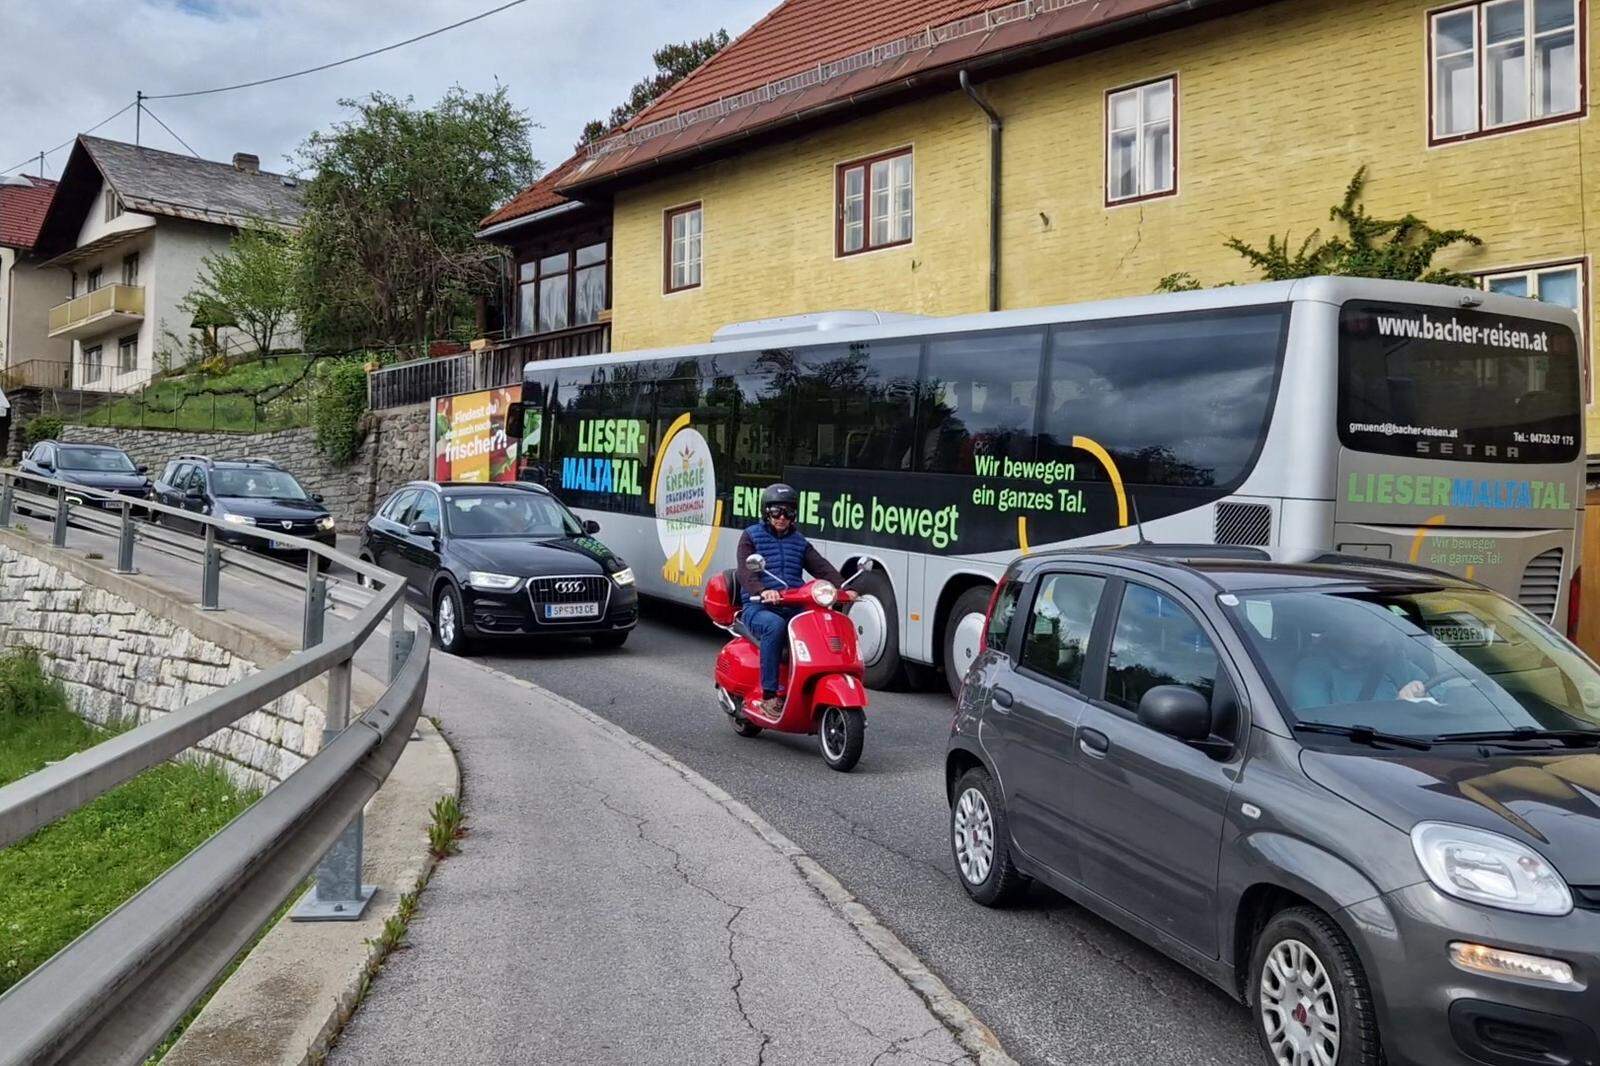 Busse, LKW und PKW schlängeln sich in dichten Abständen zu den Stoßzeiten durch die enge Straße